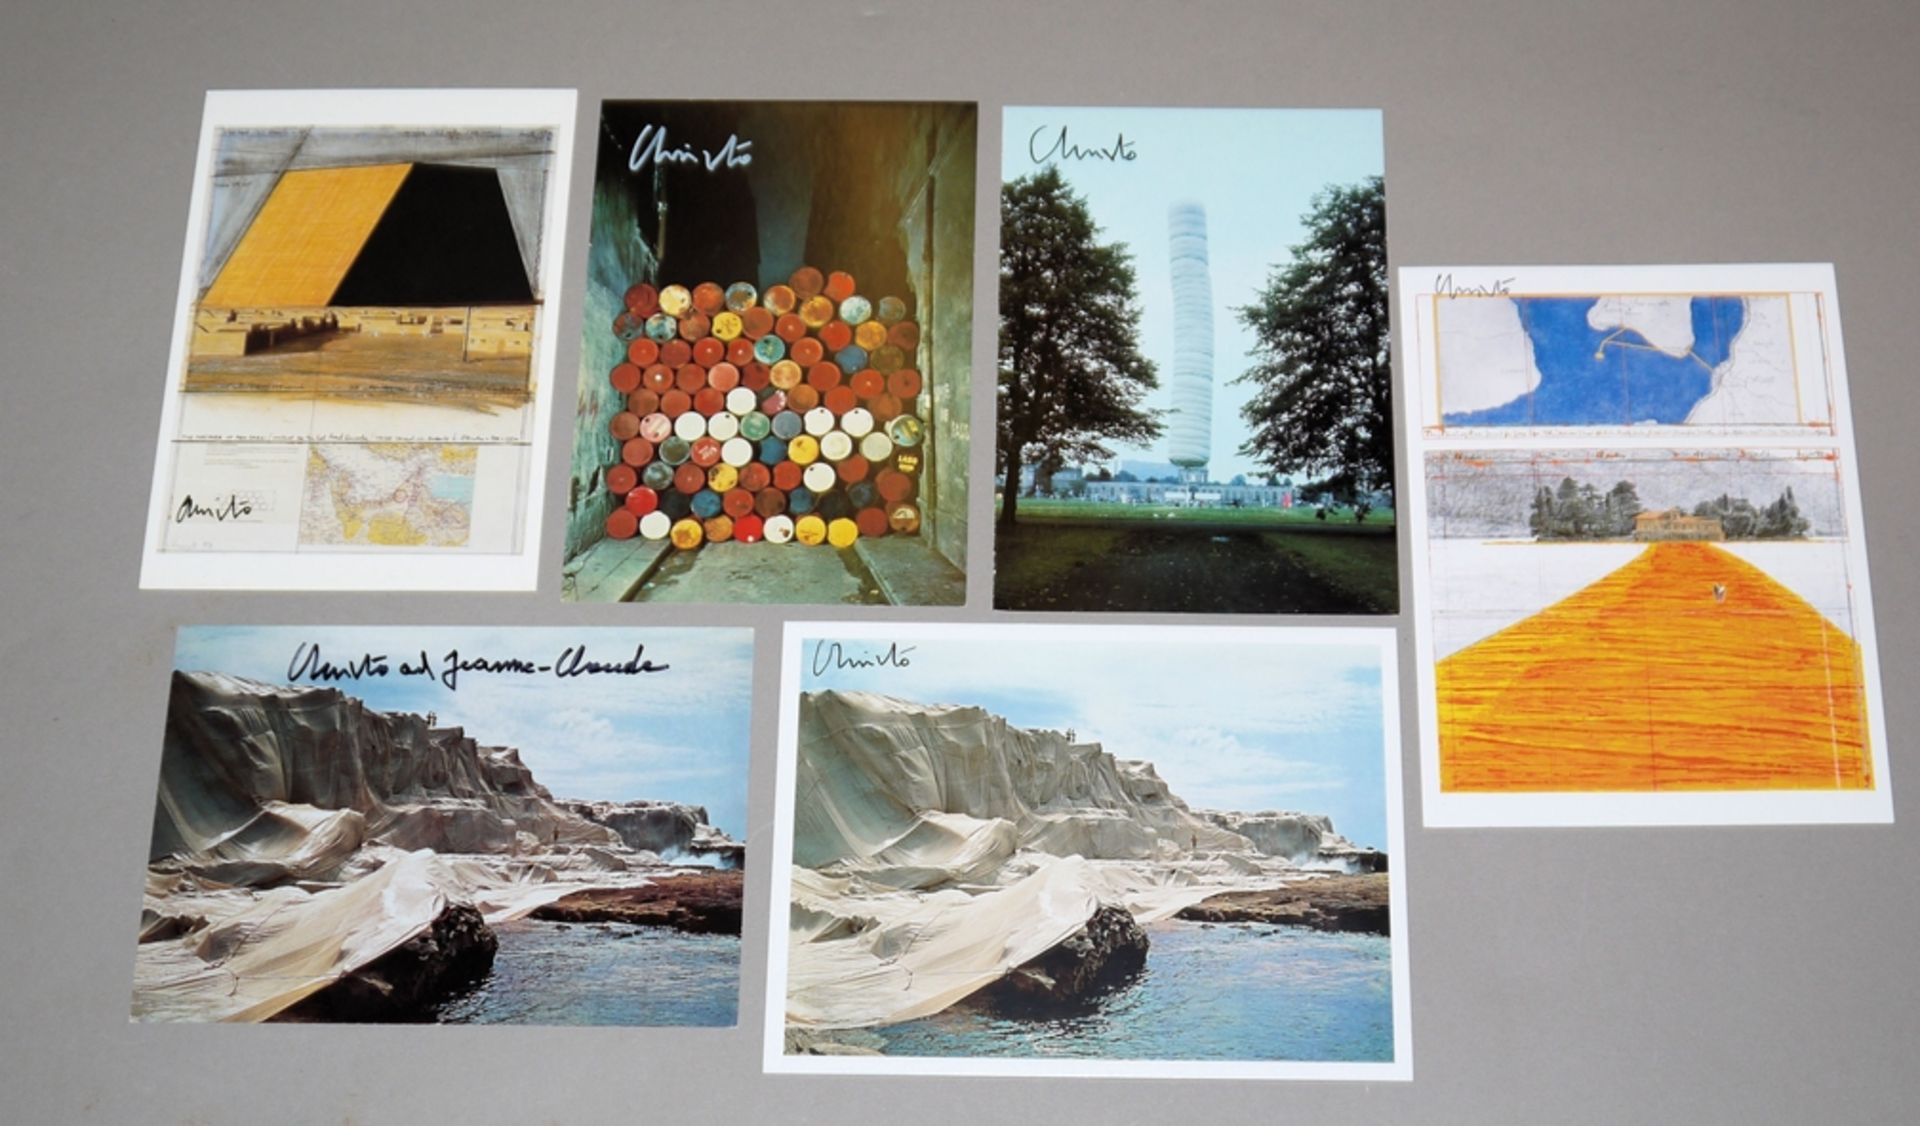 Christo, 6 handsignierte Kunstpostkarten, einmal zusätzlich von Jeanne-Claude signiert